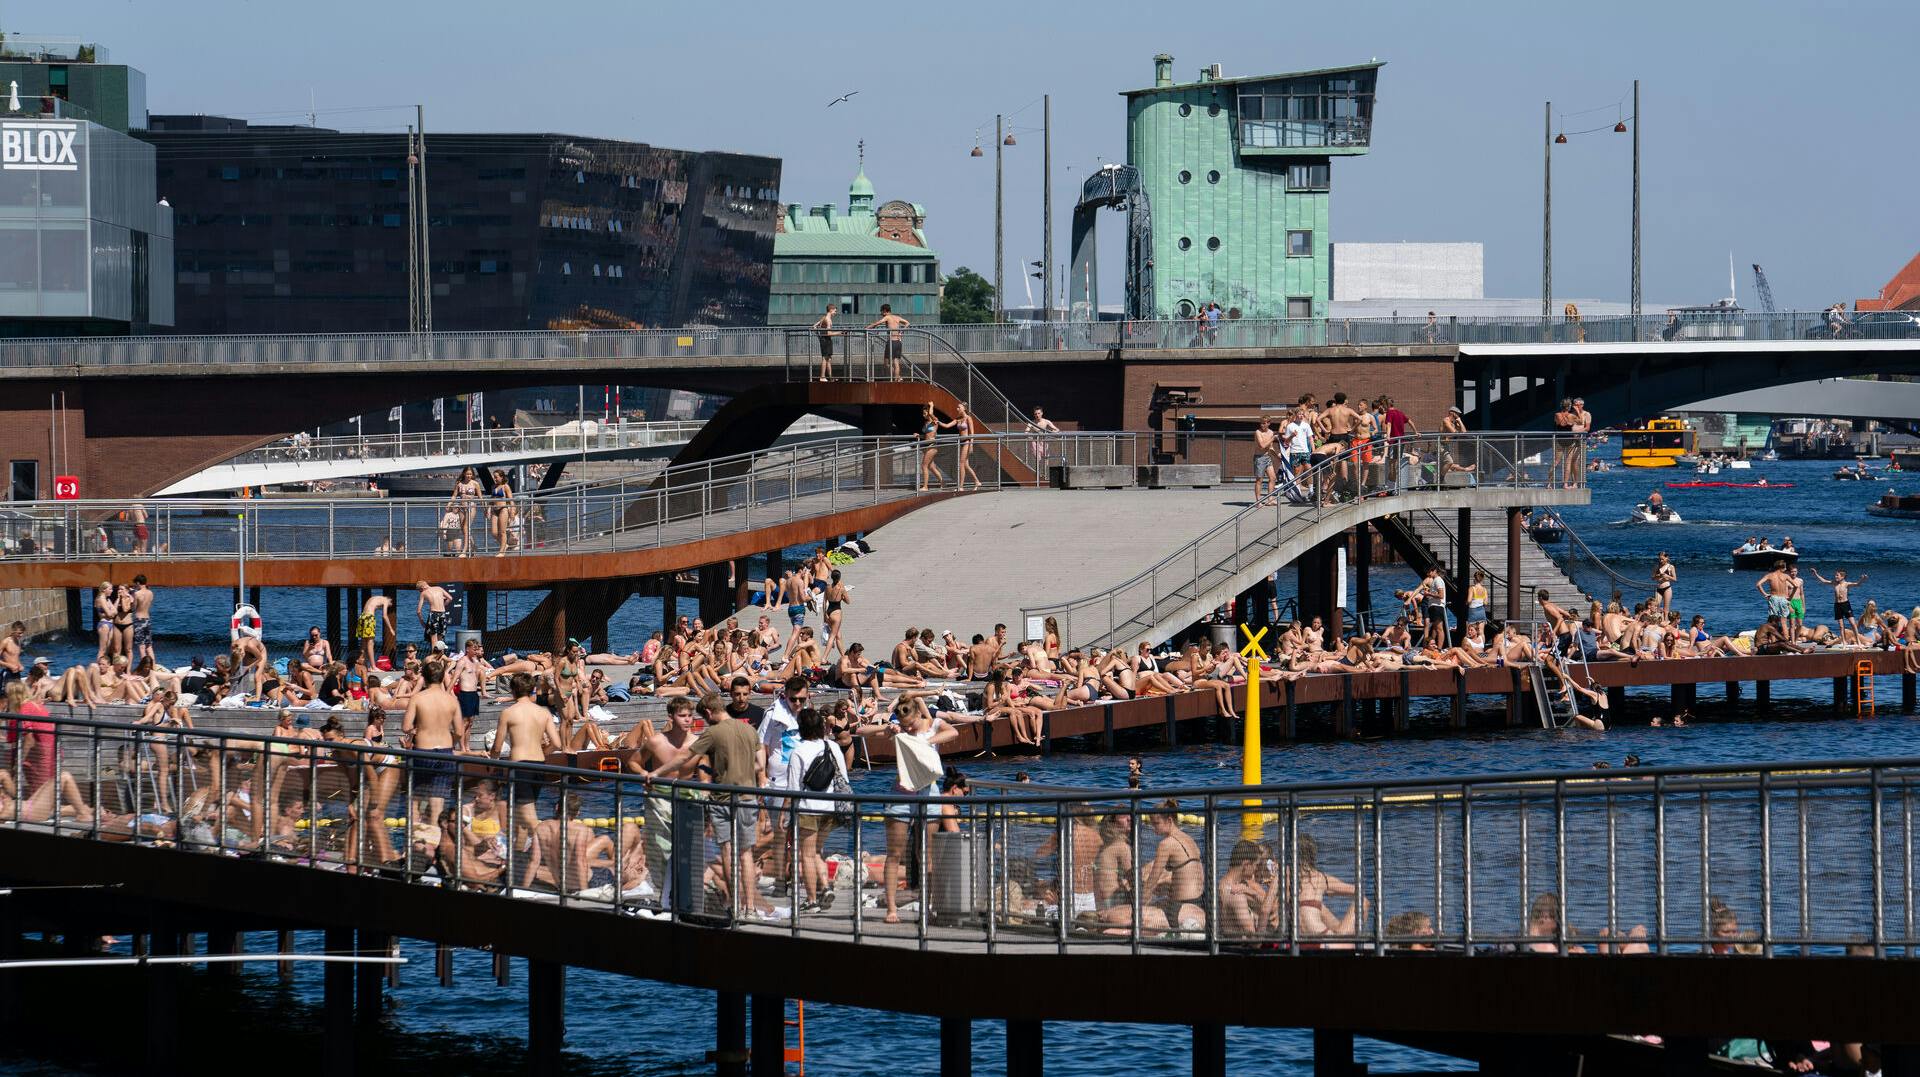 Nu bliver det varmt, og det betyder, at der kommer flere mennesker med musik på de offentlige områder i de dansker byer.